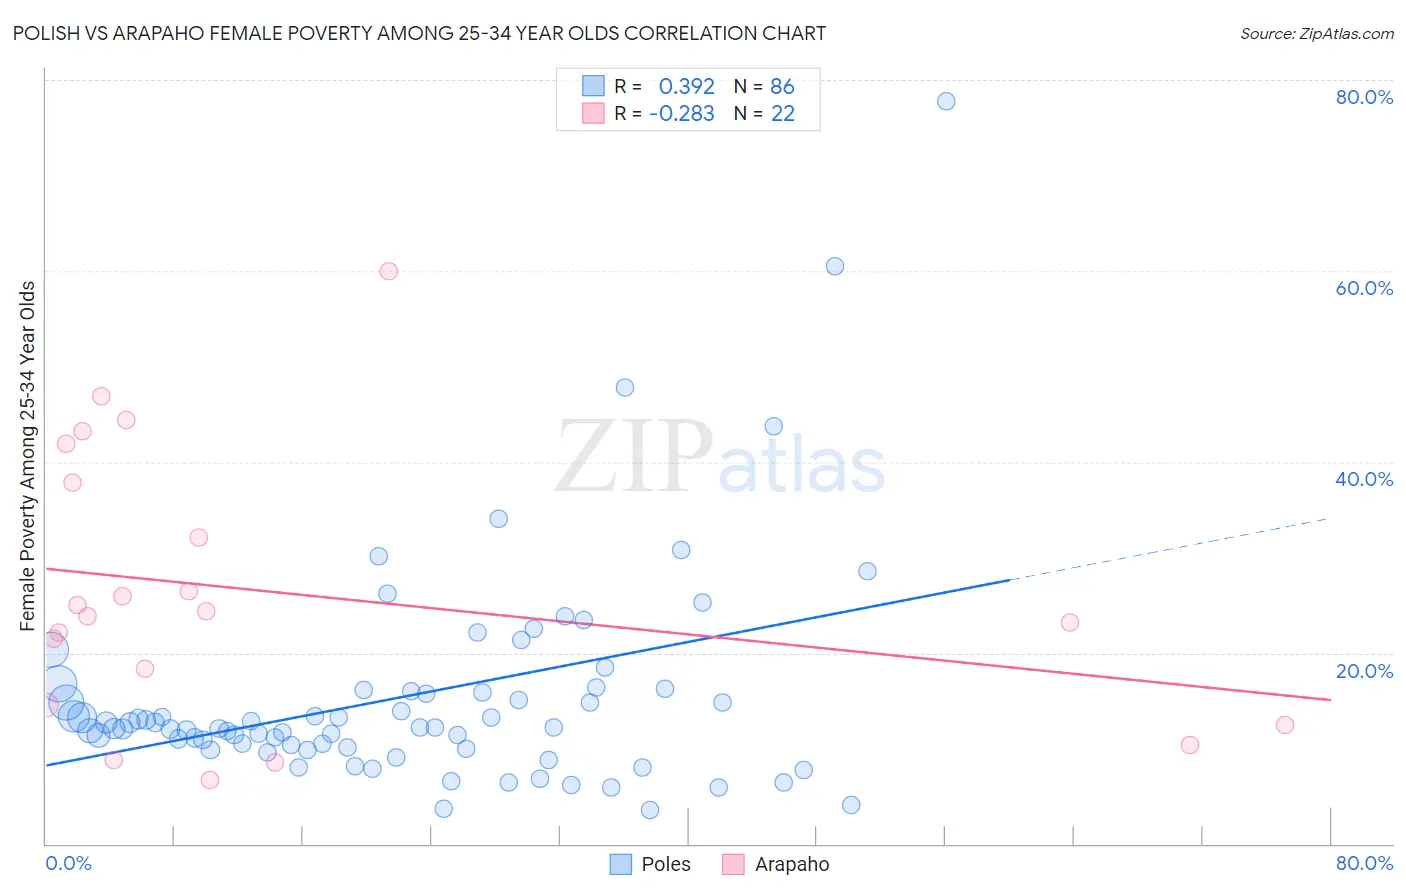 Polish vs Arapaho Female Poverty Among 25-34 Year Olds